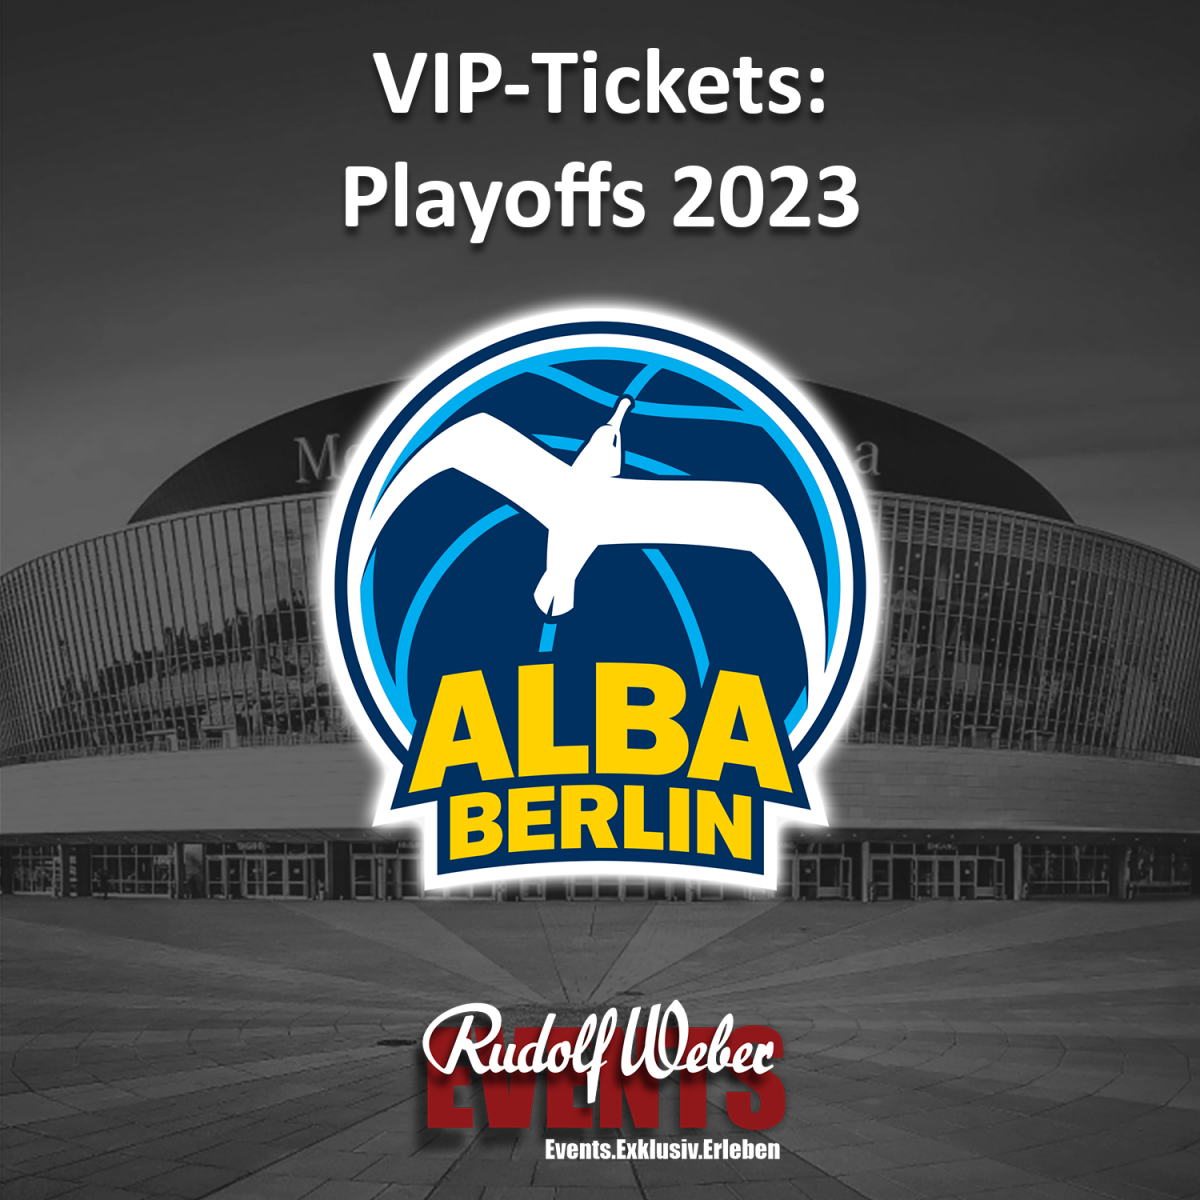 Alba Berlin: Playoff-Tickets sichern Sie sich mit Rudolf Weber Events.